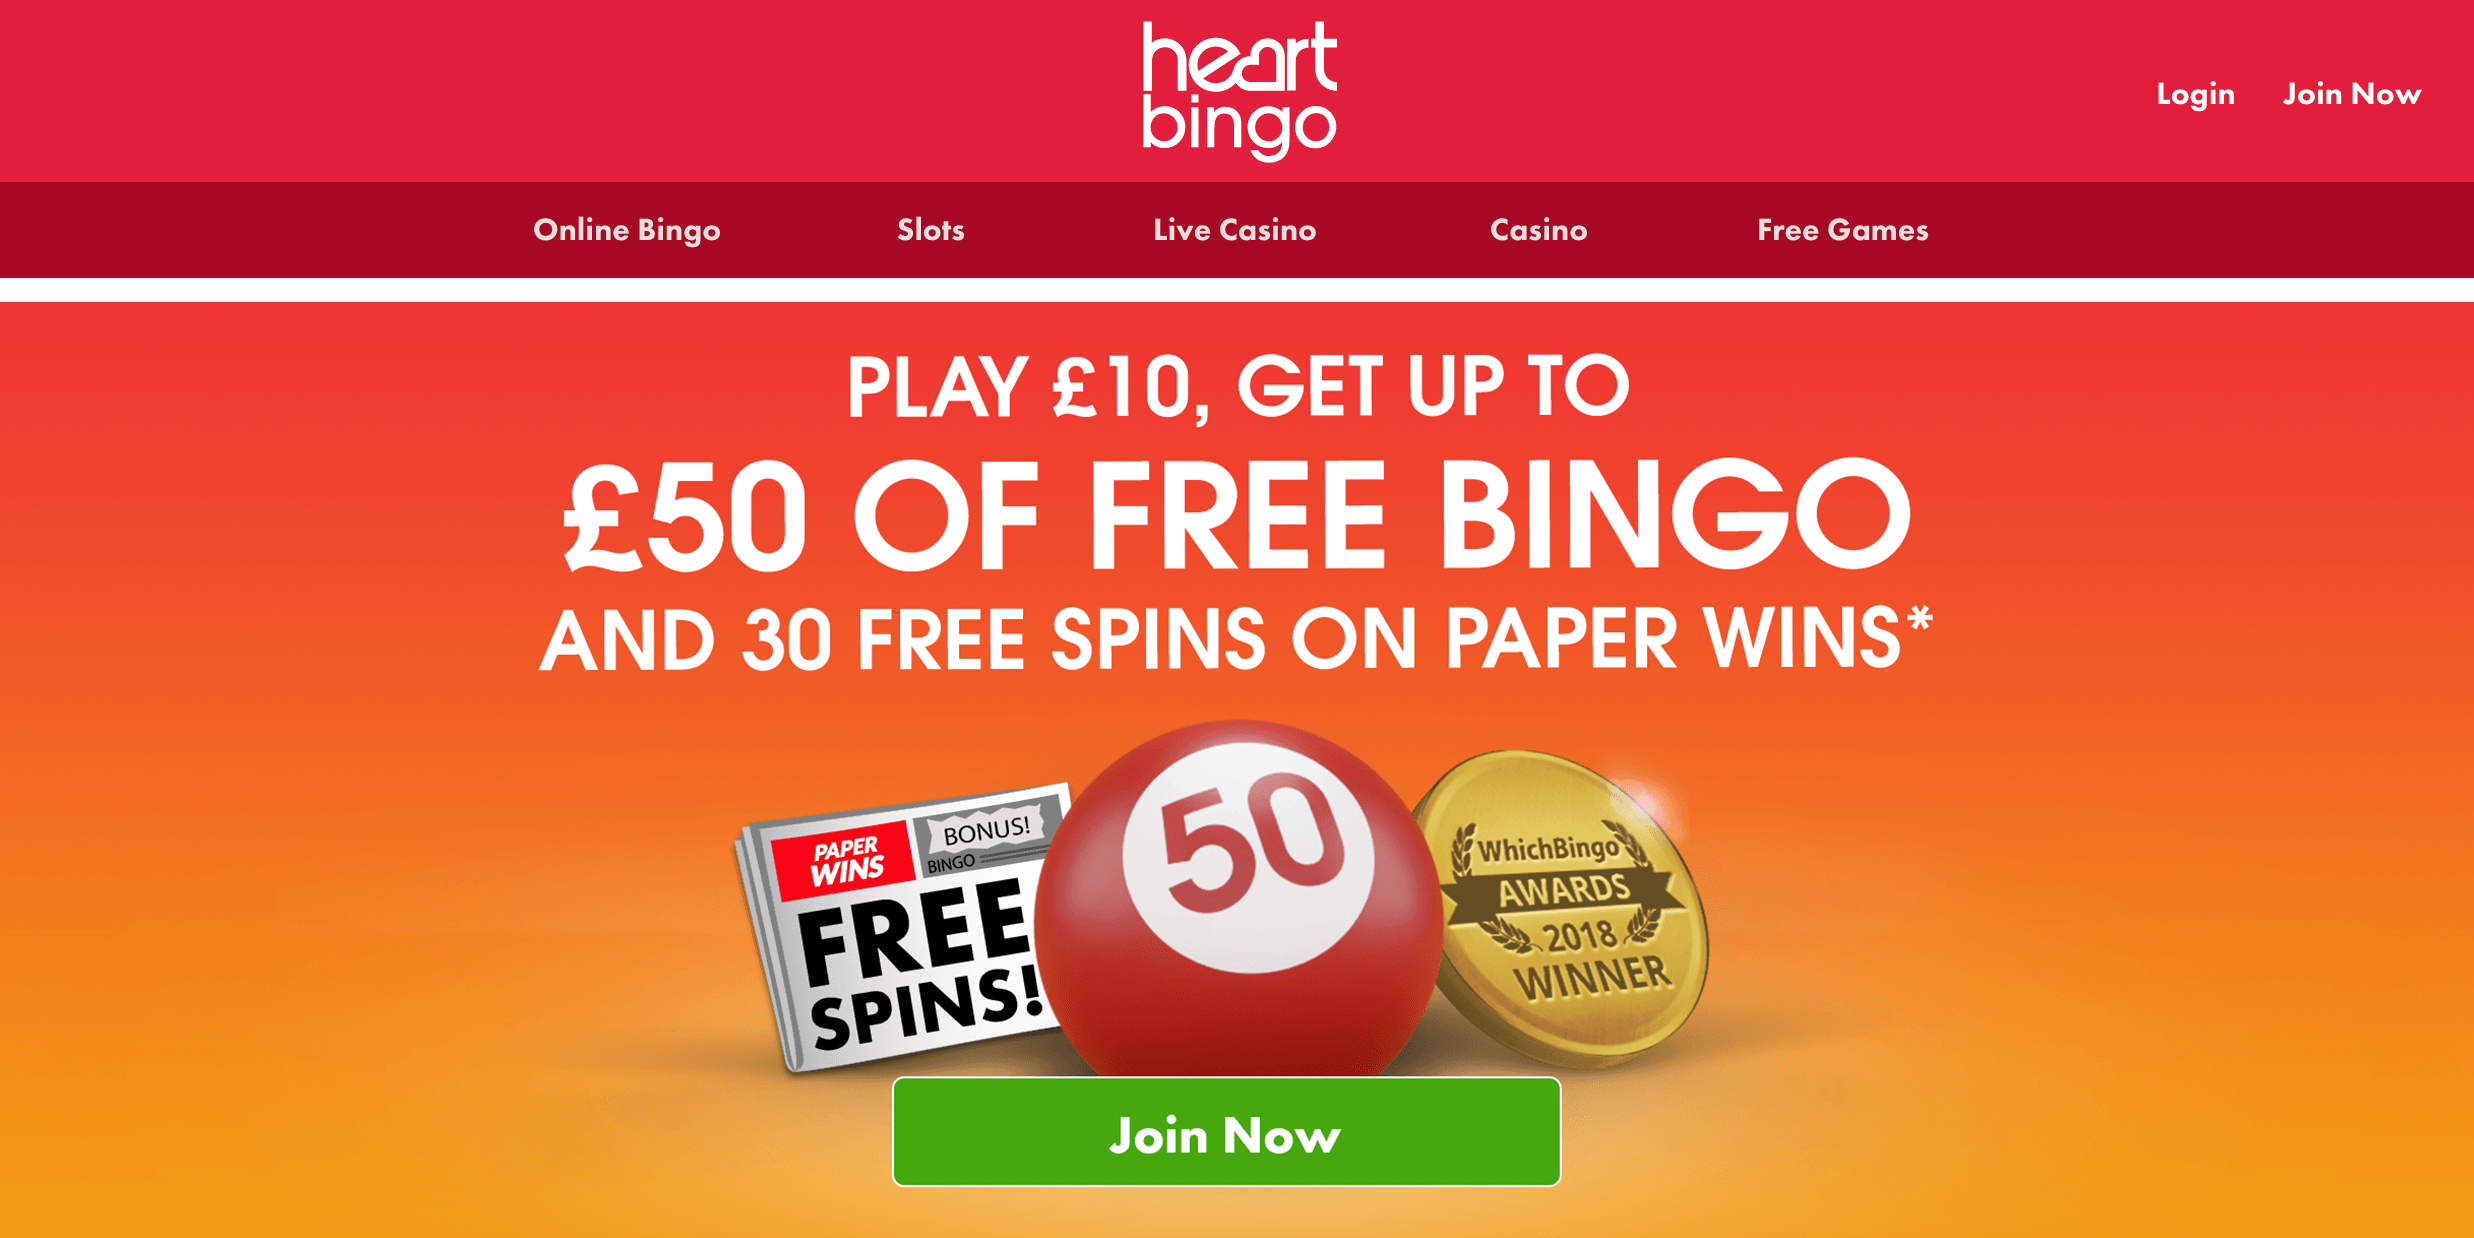 Heart Bingo Site Is